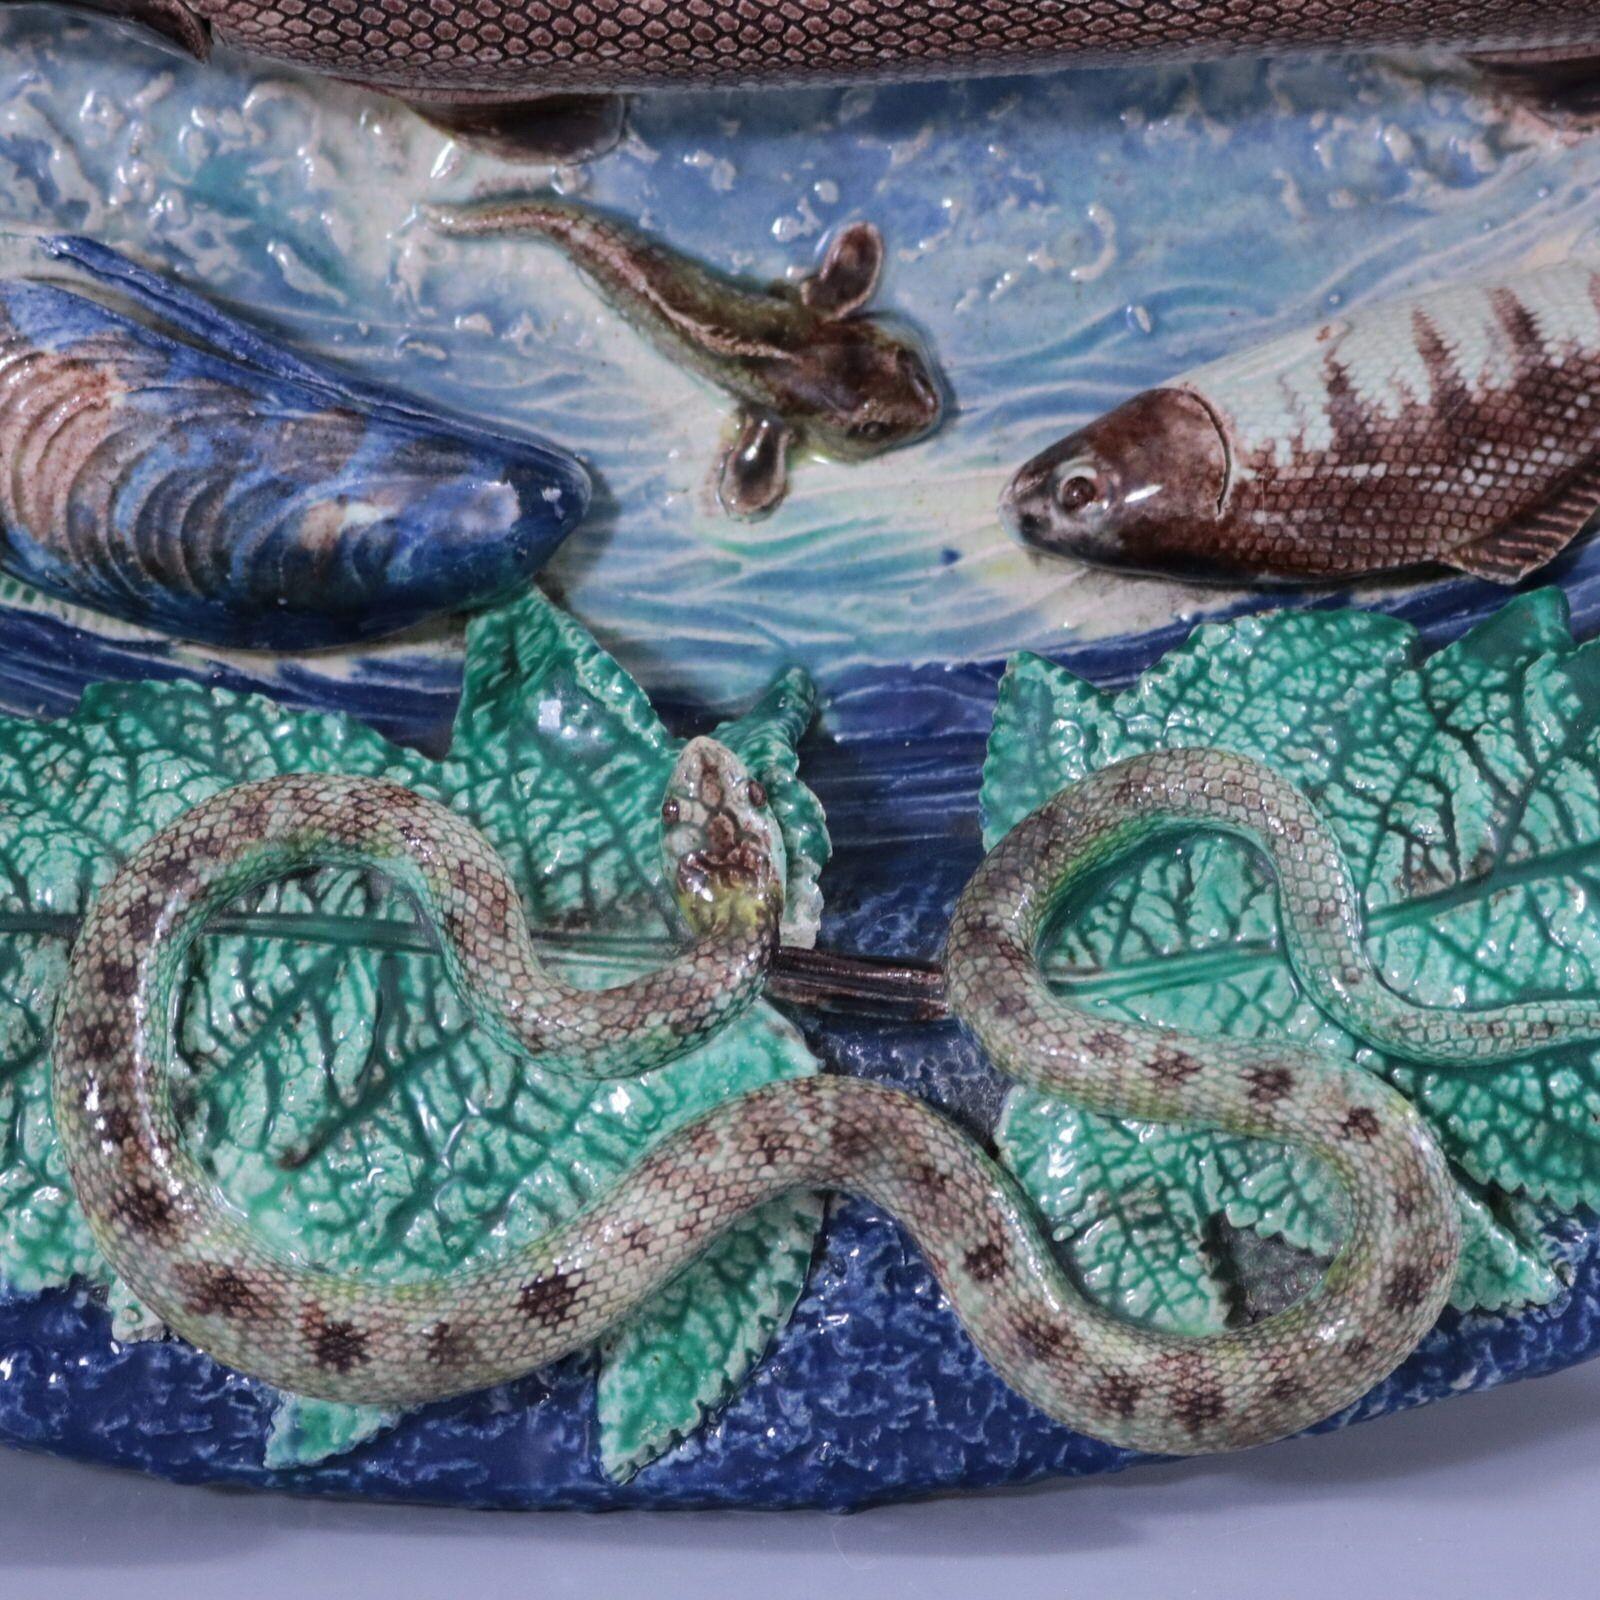 Barbizet (zugeschrieben) Wandteller aus französischer Palissy-Majolika mit Fischen (darunter ein Hecht), einer Schlange, einer Eidechse, einem Frosch, Insekten, Schalentieren und Blättern. Färbung: blau, grün, braun, sind vorherrschend.